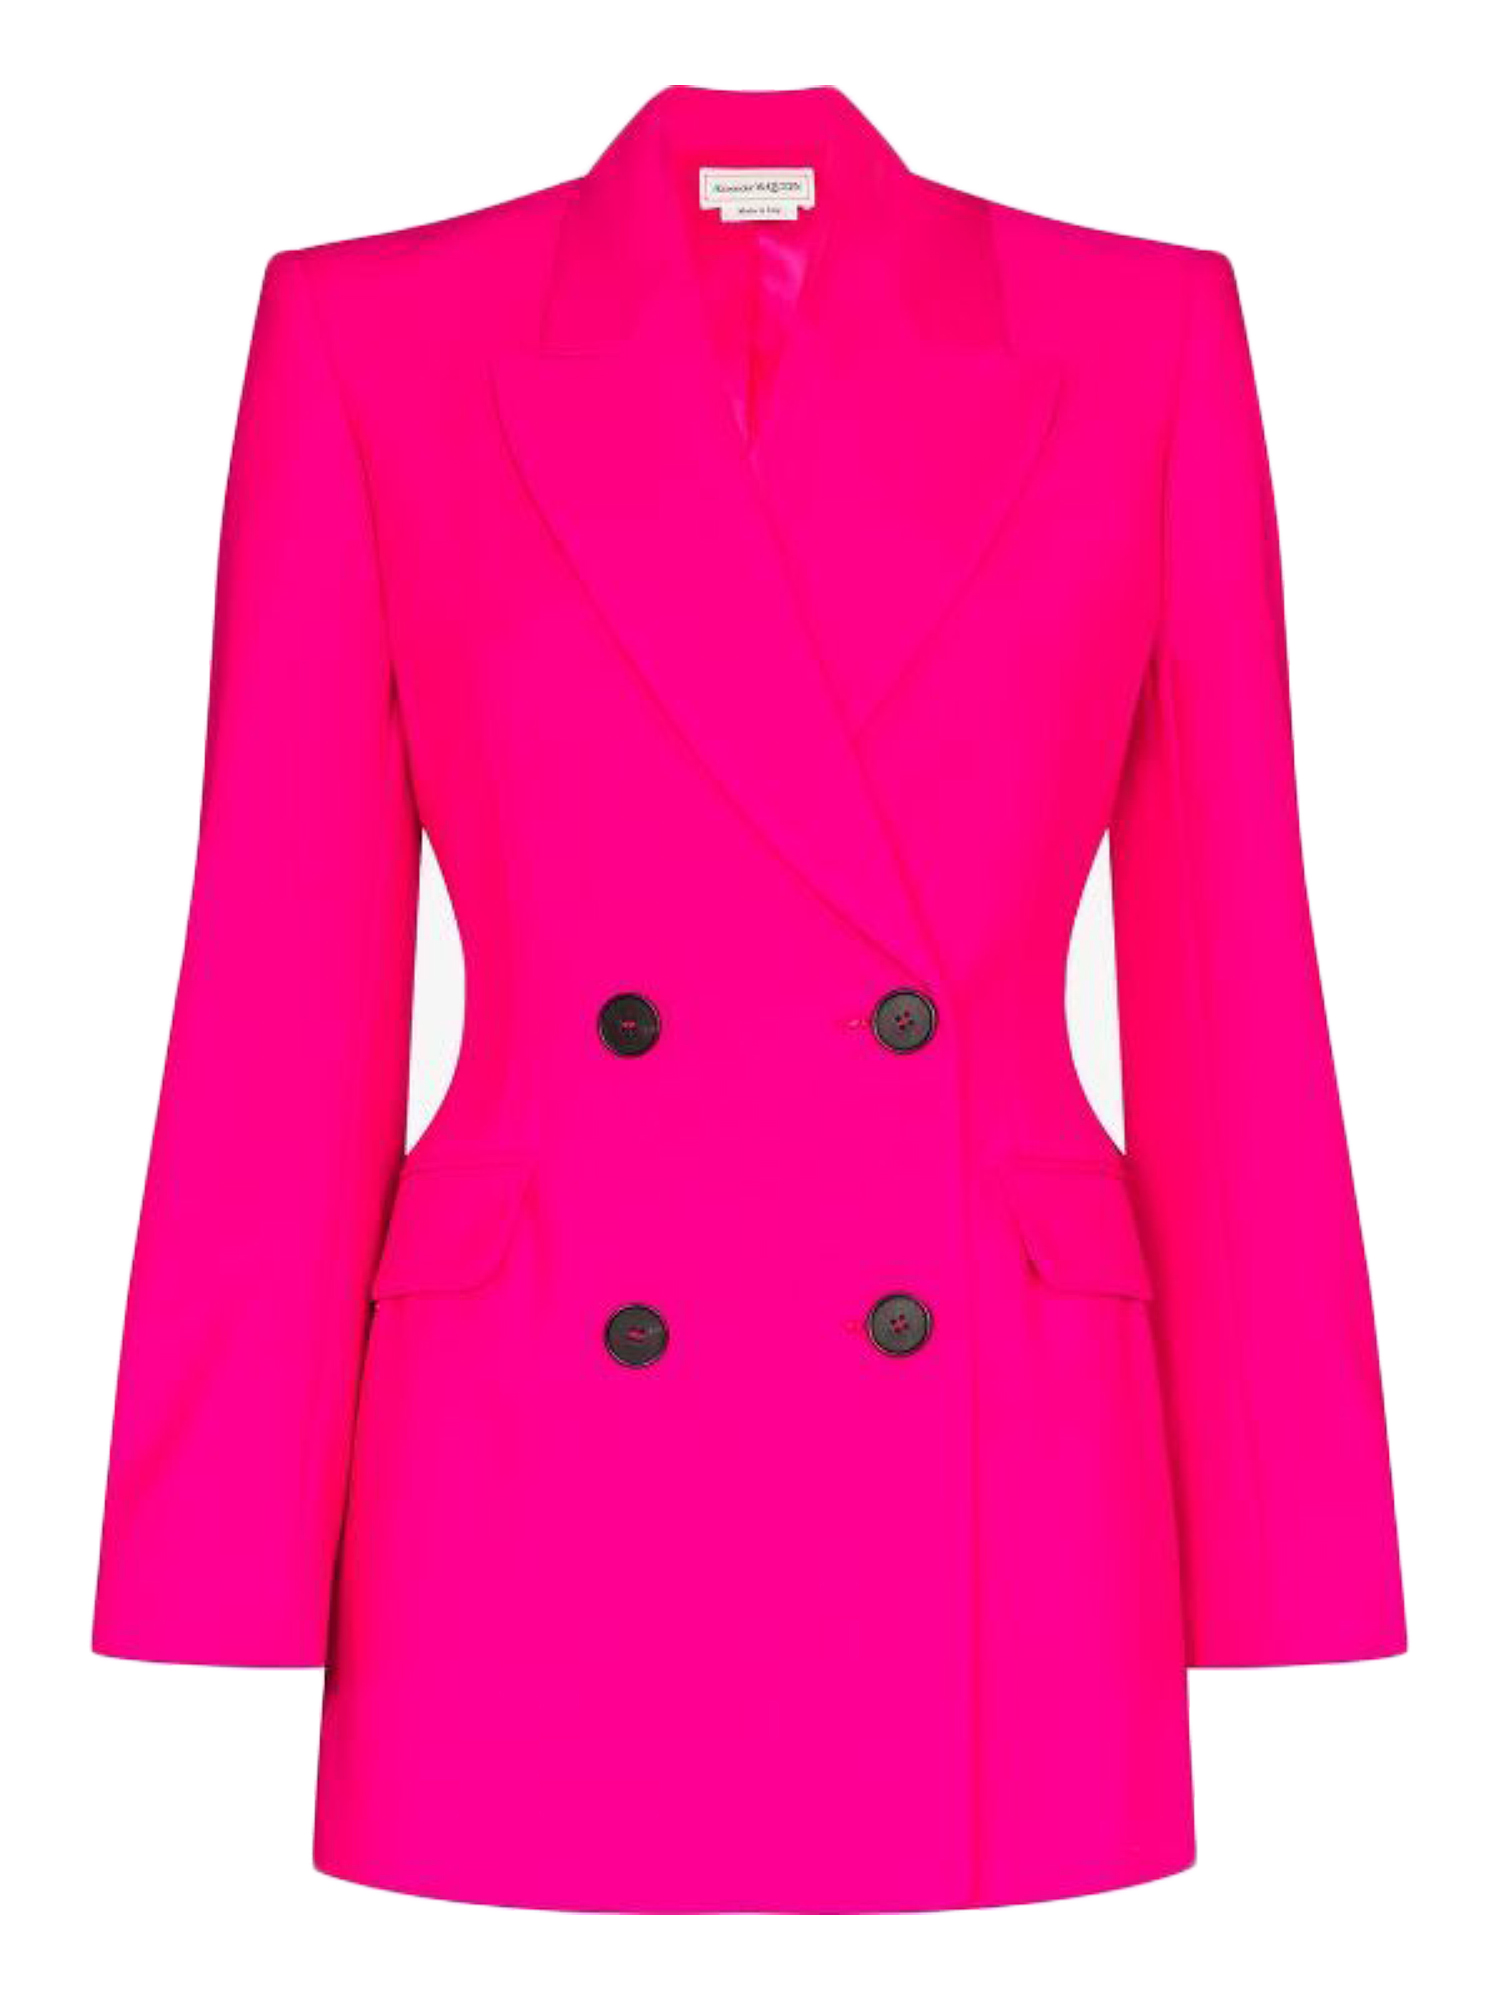 Vestes Pour Femme - Alexander Mcqueen - En Wool Pink - Taille:  -